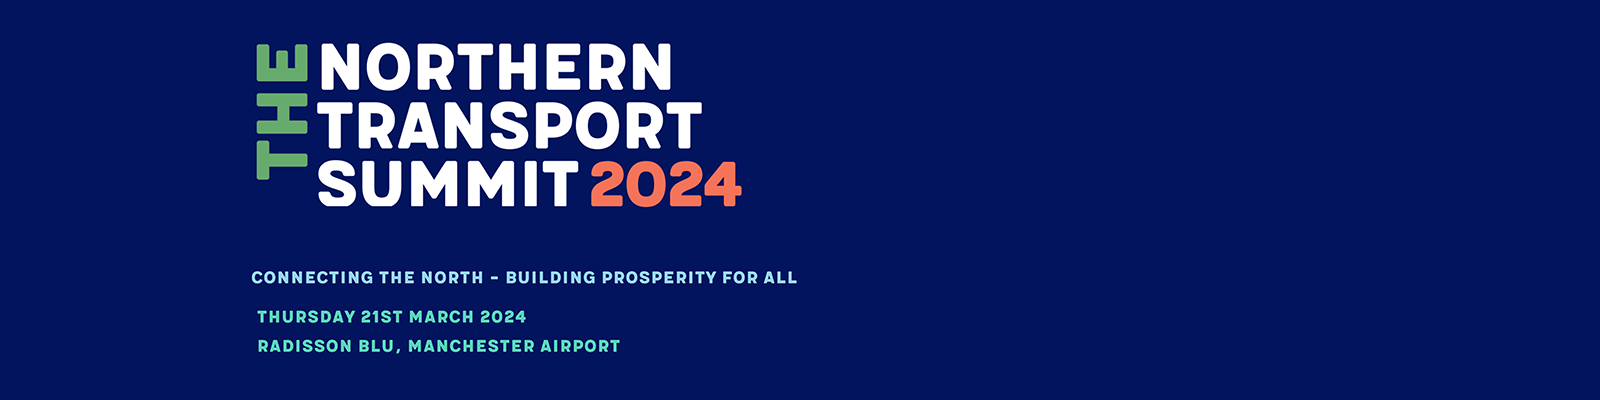 Northern Transport Summit 2024 banner